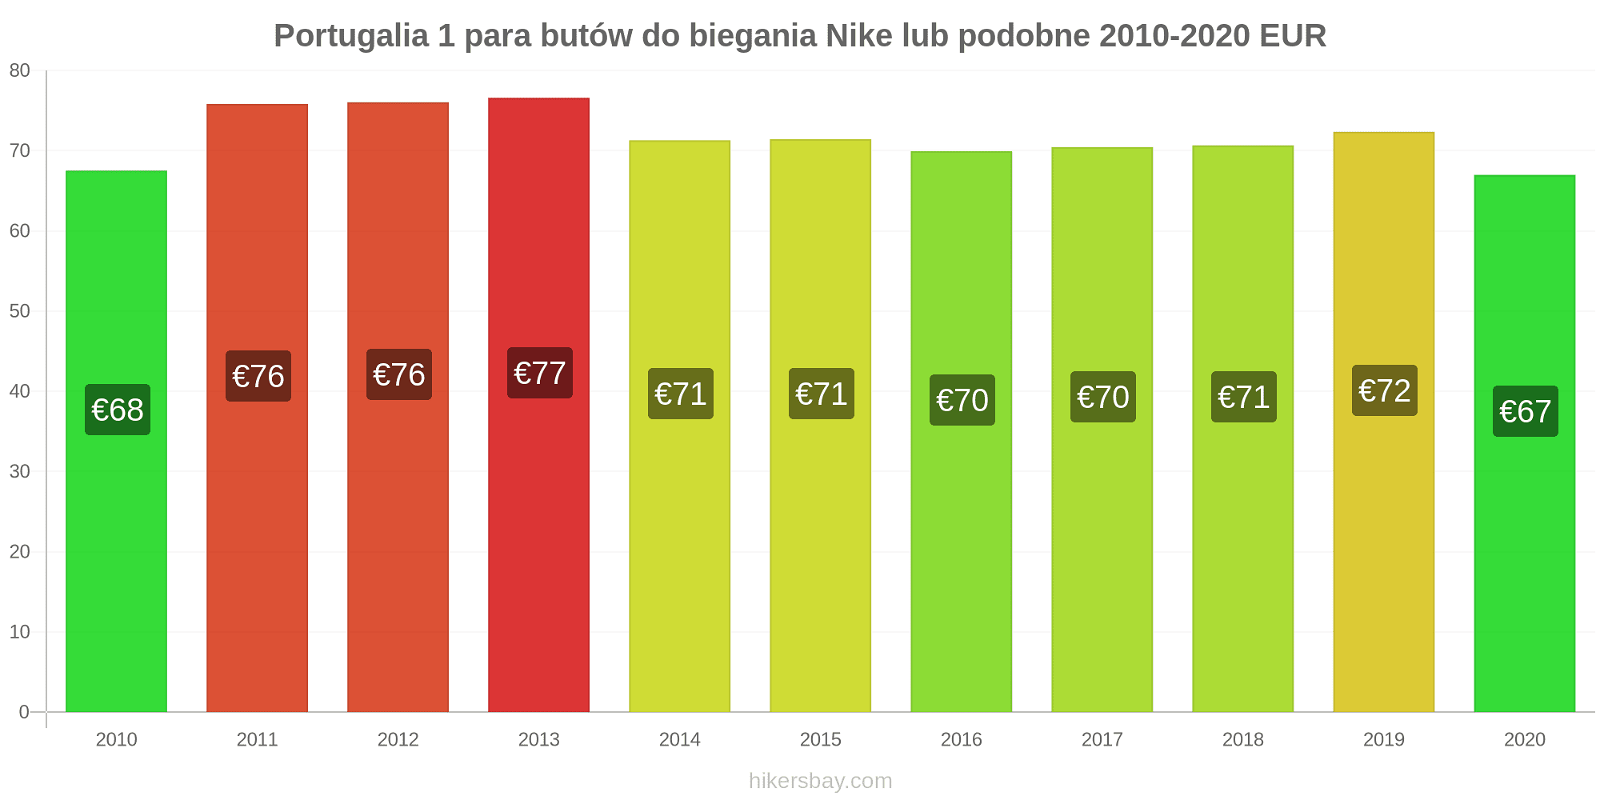 Portugalia zmiany cen 1 para butów do biegania Nike lub podobne hikersbay.com